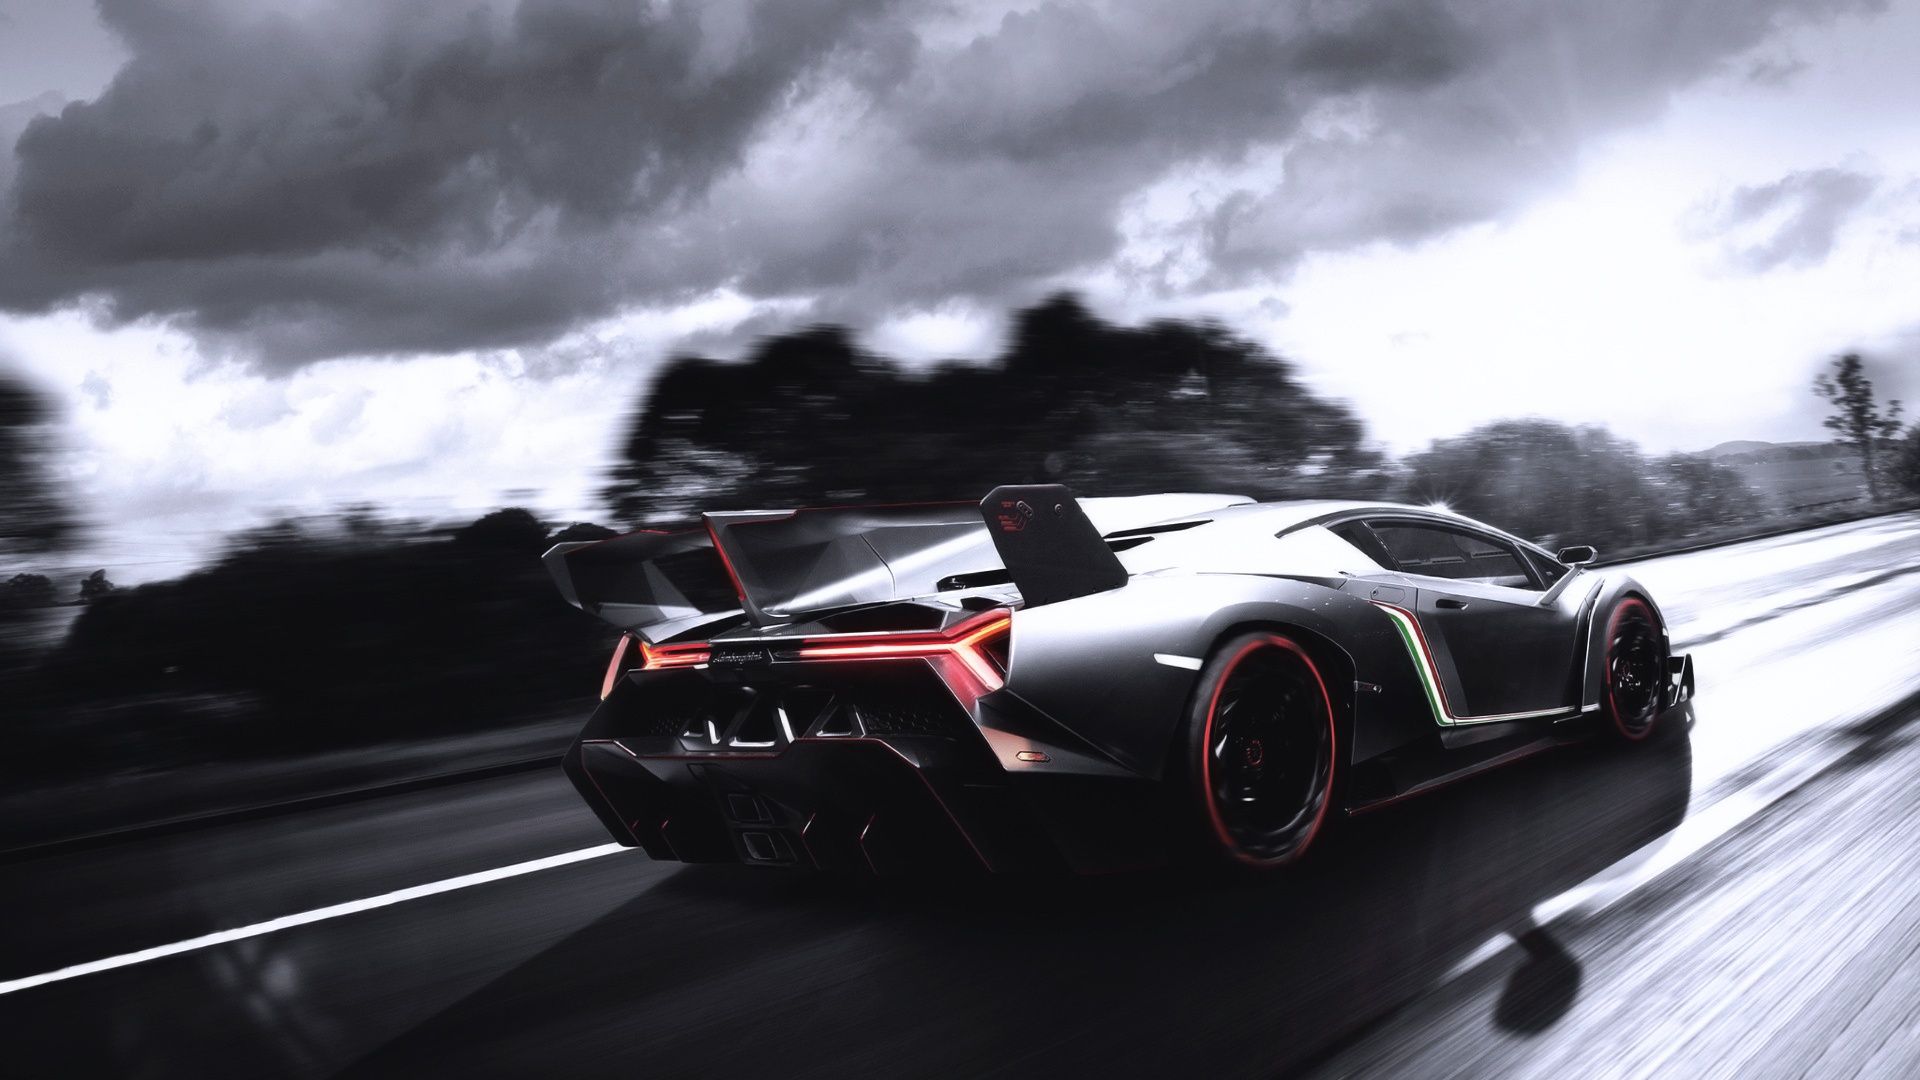 Lamborghini supercar at road high speed Wallpapers HD Desktop